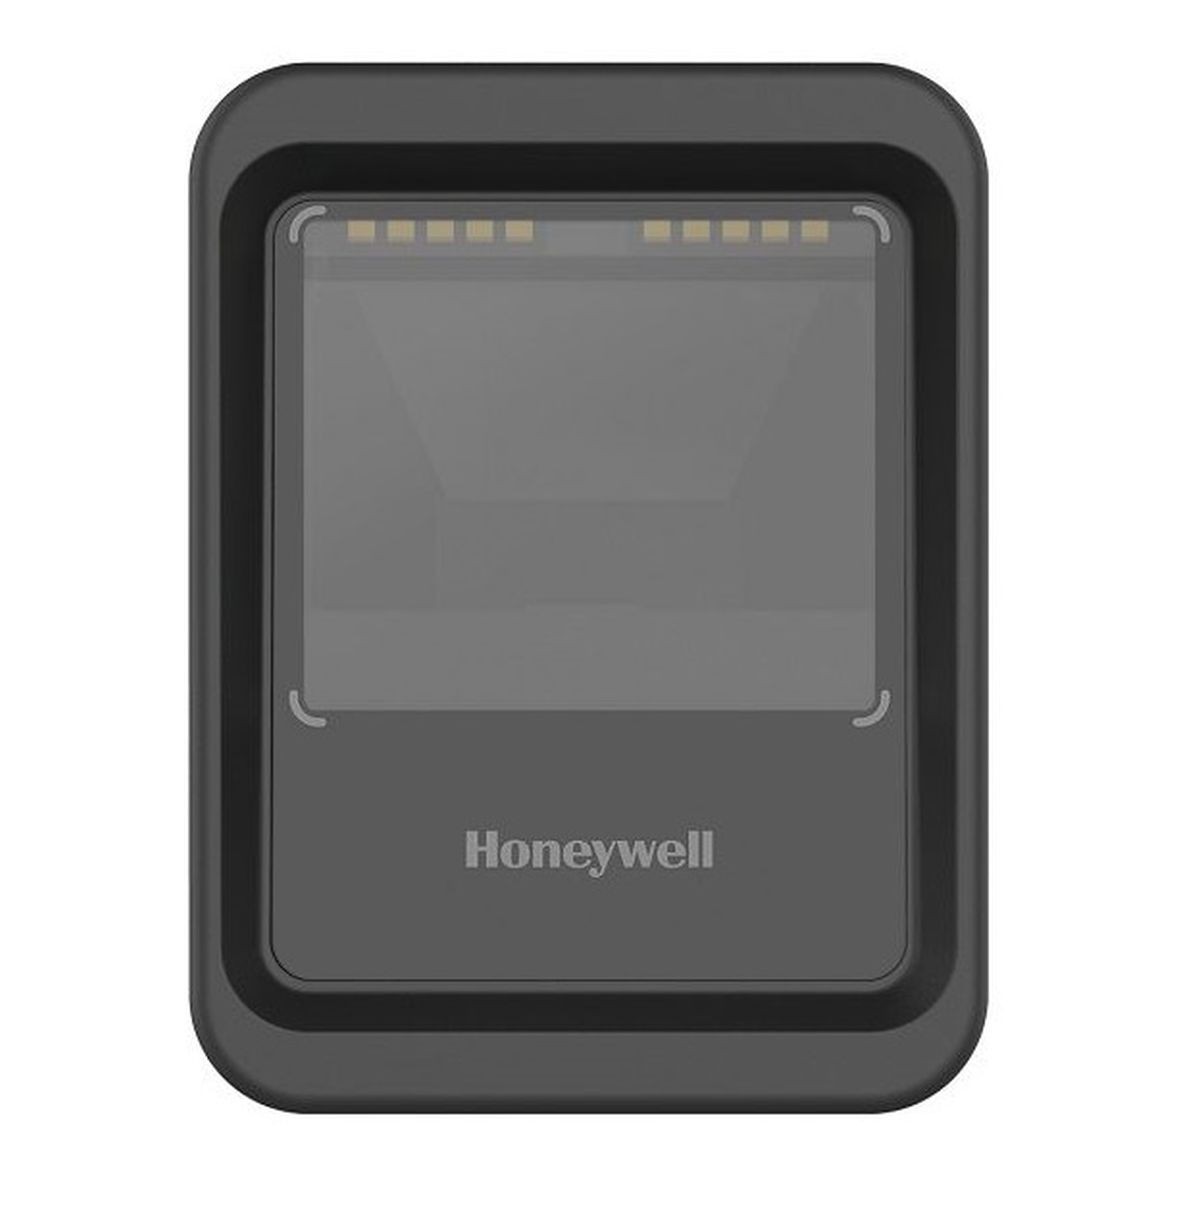 Honeywell Czytnik prezentacyjny Genesis XP 7680g 7680GSR-2-R